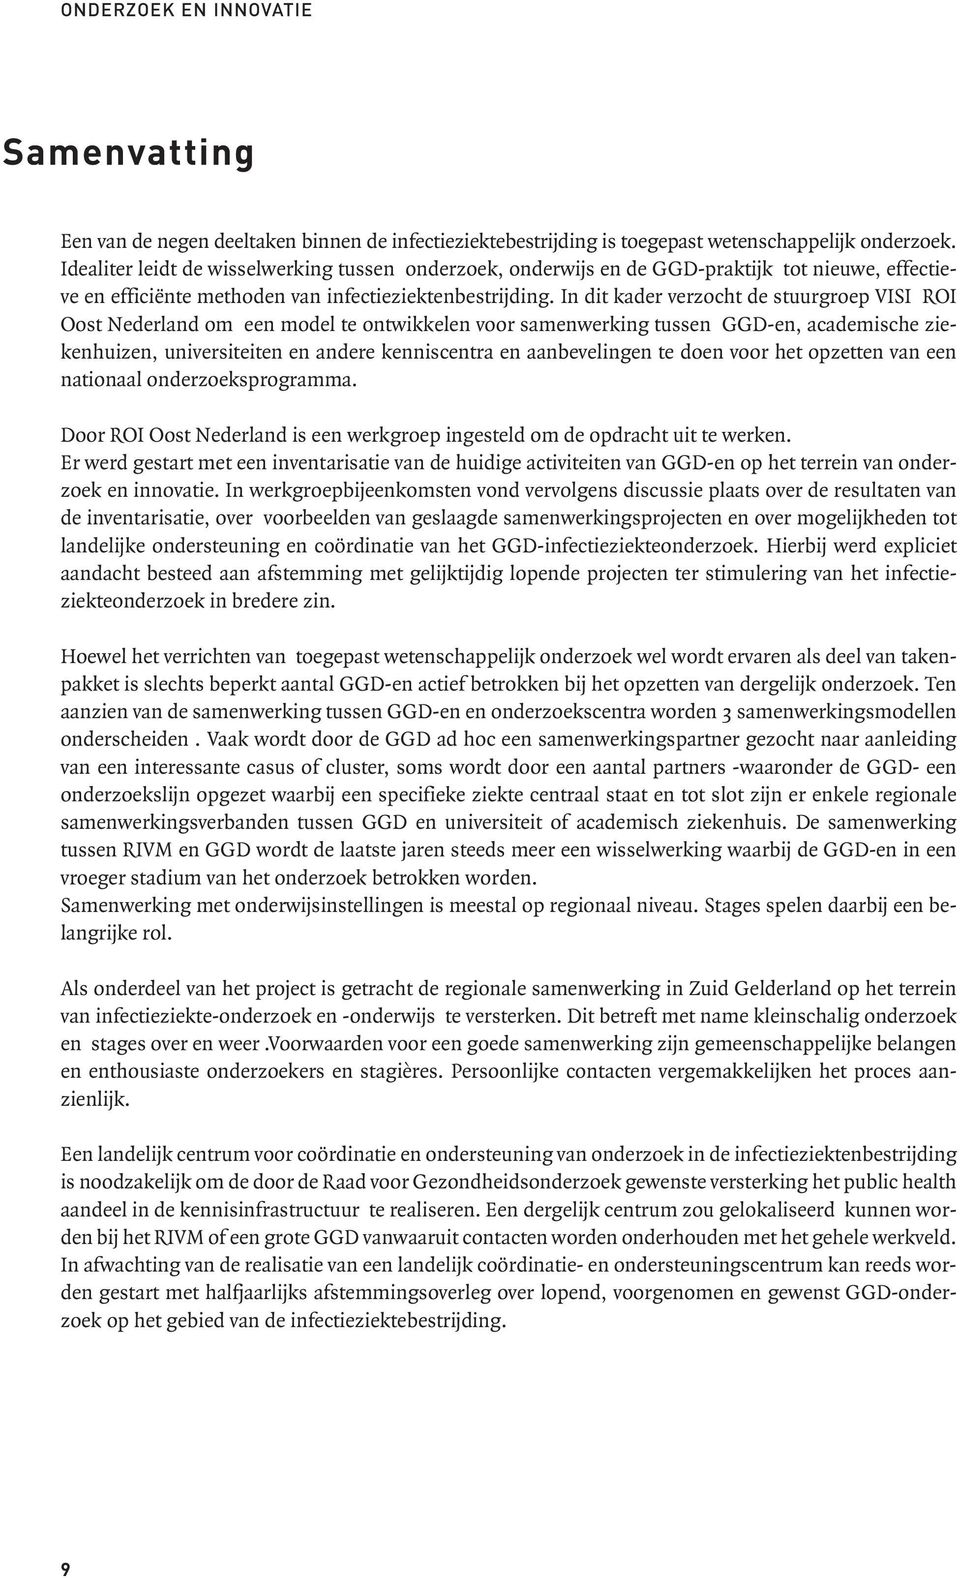 In dit kader verzocht de stuurgroep VISI ROI Oost Nederland om een model te ontwikkelen voor samenwerking tussen GGD-en, academische ziekenhuizen, universiteiten en andere kenniscentra en